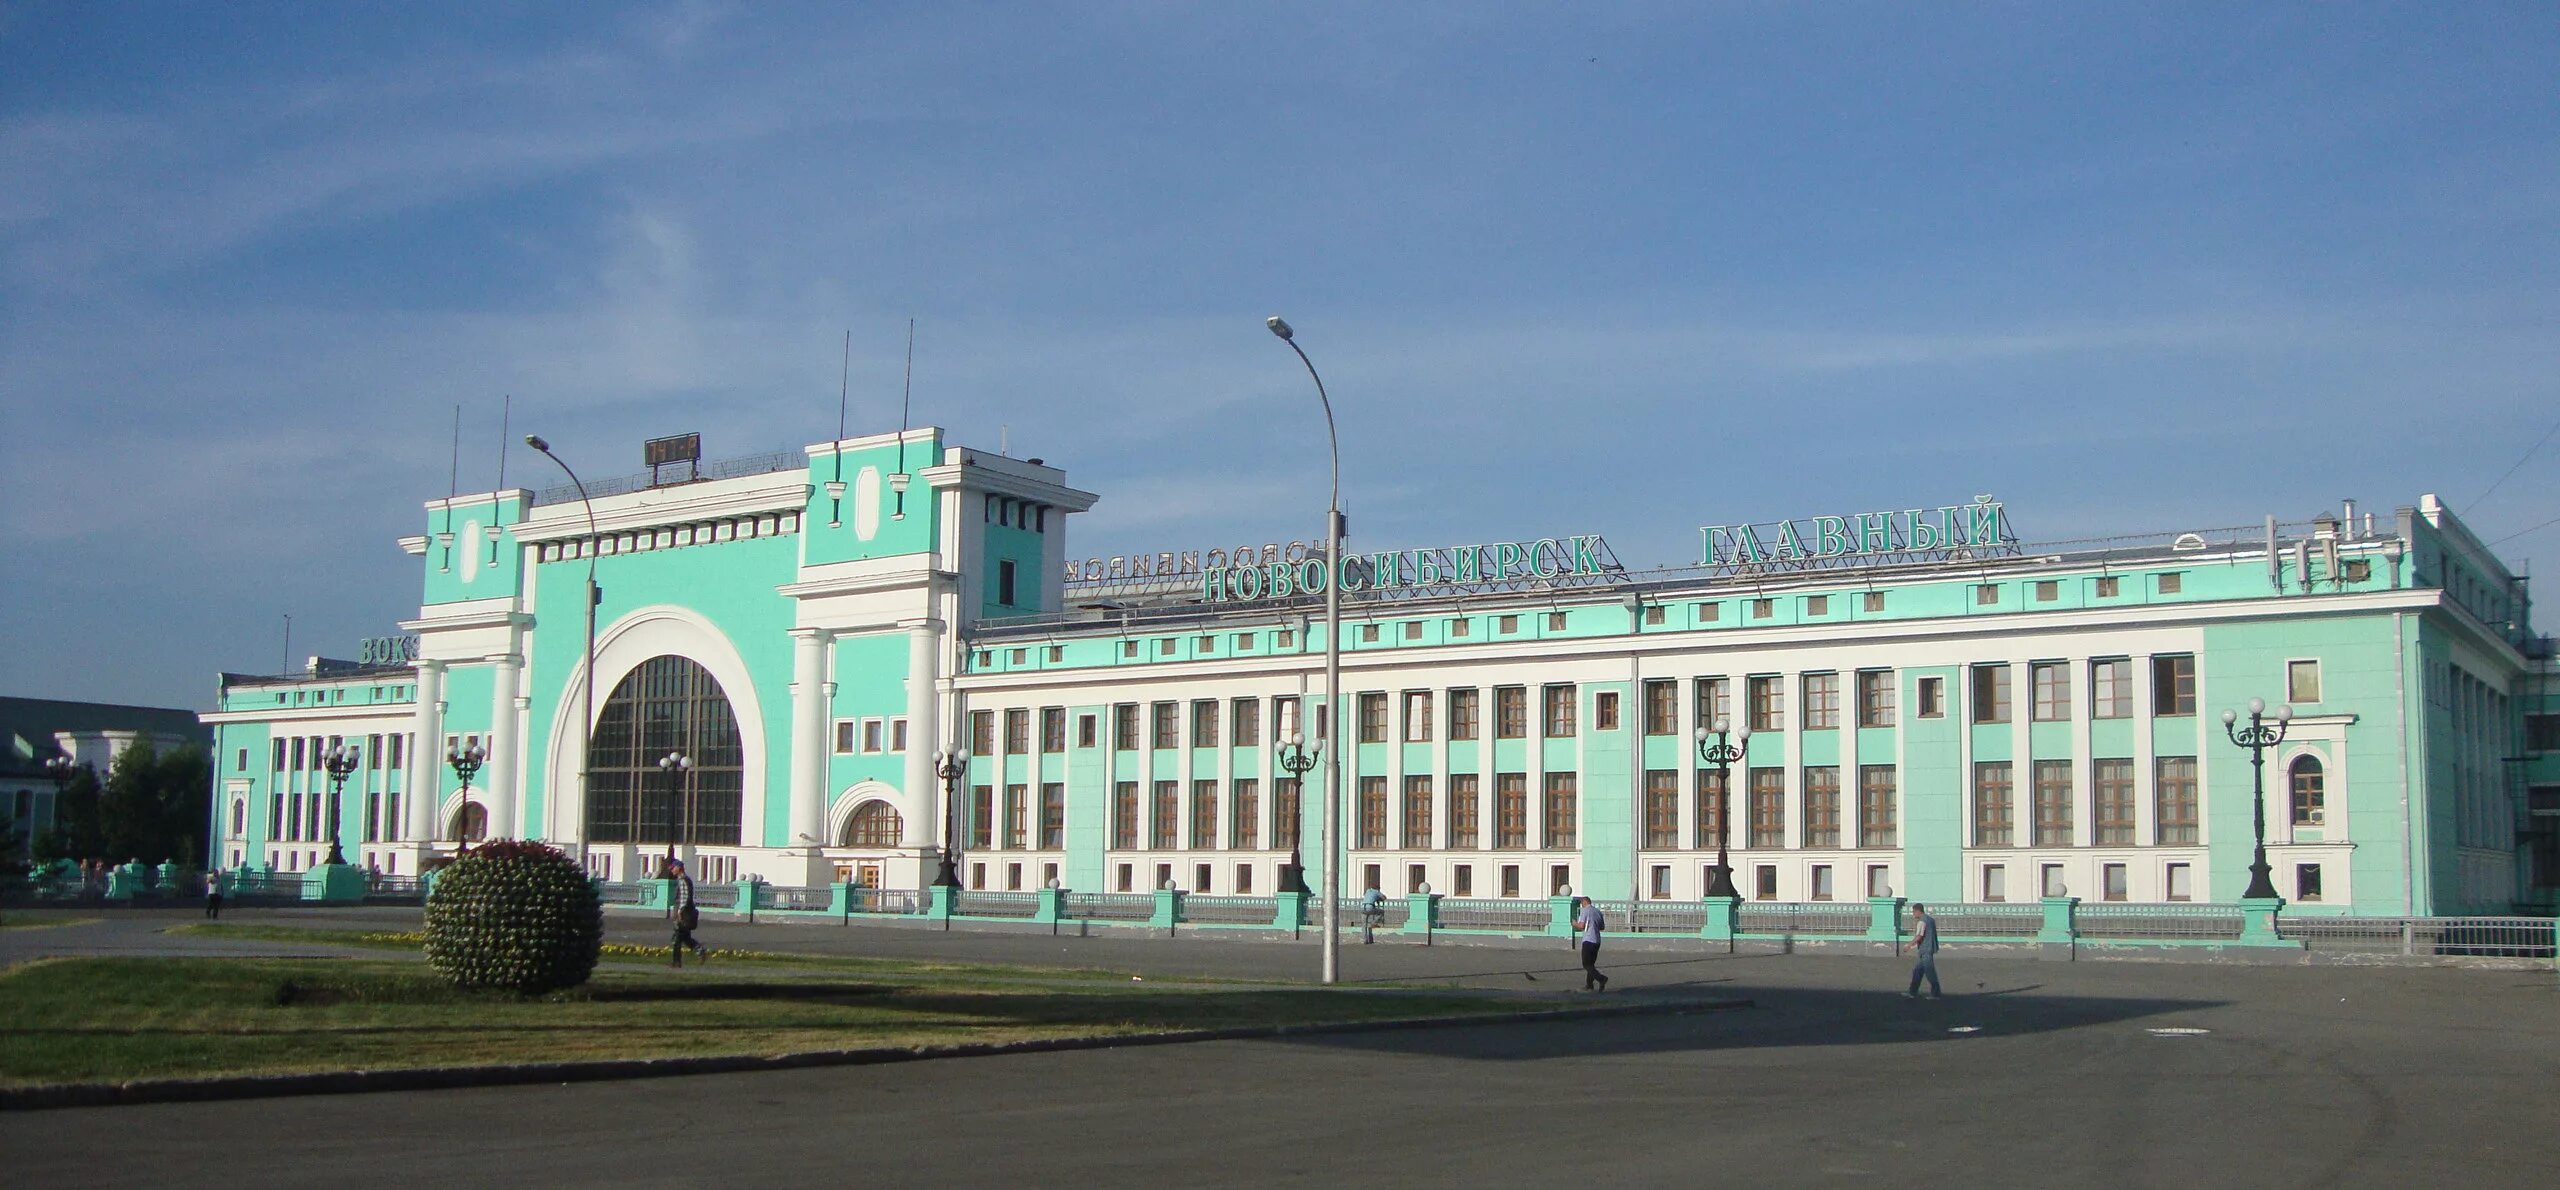 Здание железнодорожного вокзала Новосибирск-главный. Вокзал железнодорожной станции Новосибирск-главный. Ж Д вокзал Новосибирск главный. Новосибирск здание вокзал главный. Номер телефона главного вокзала